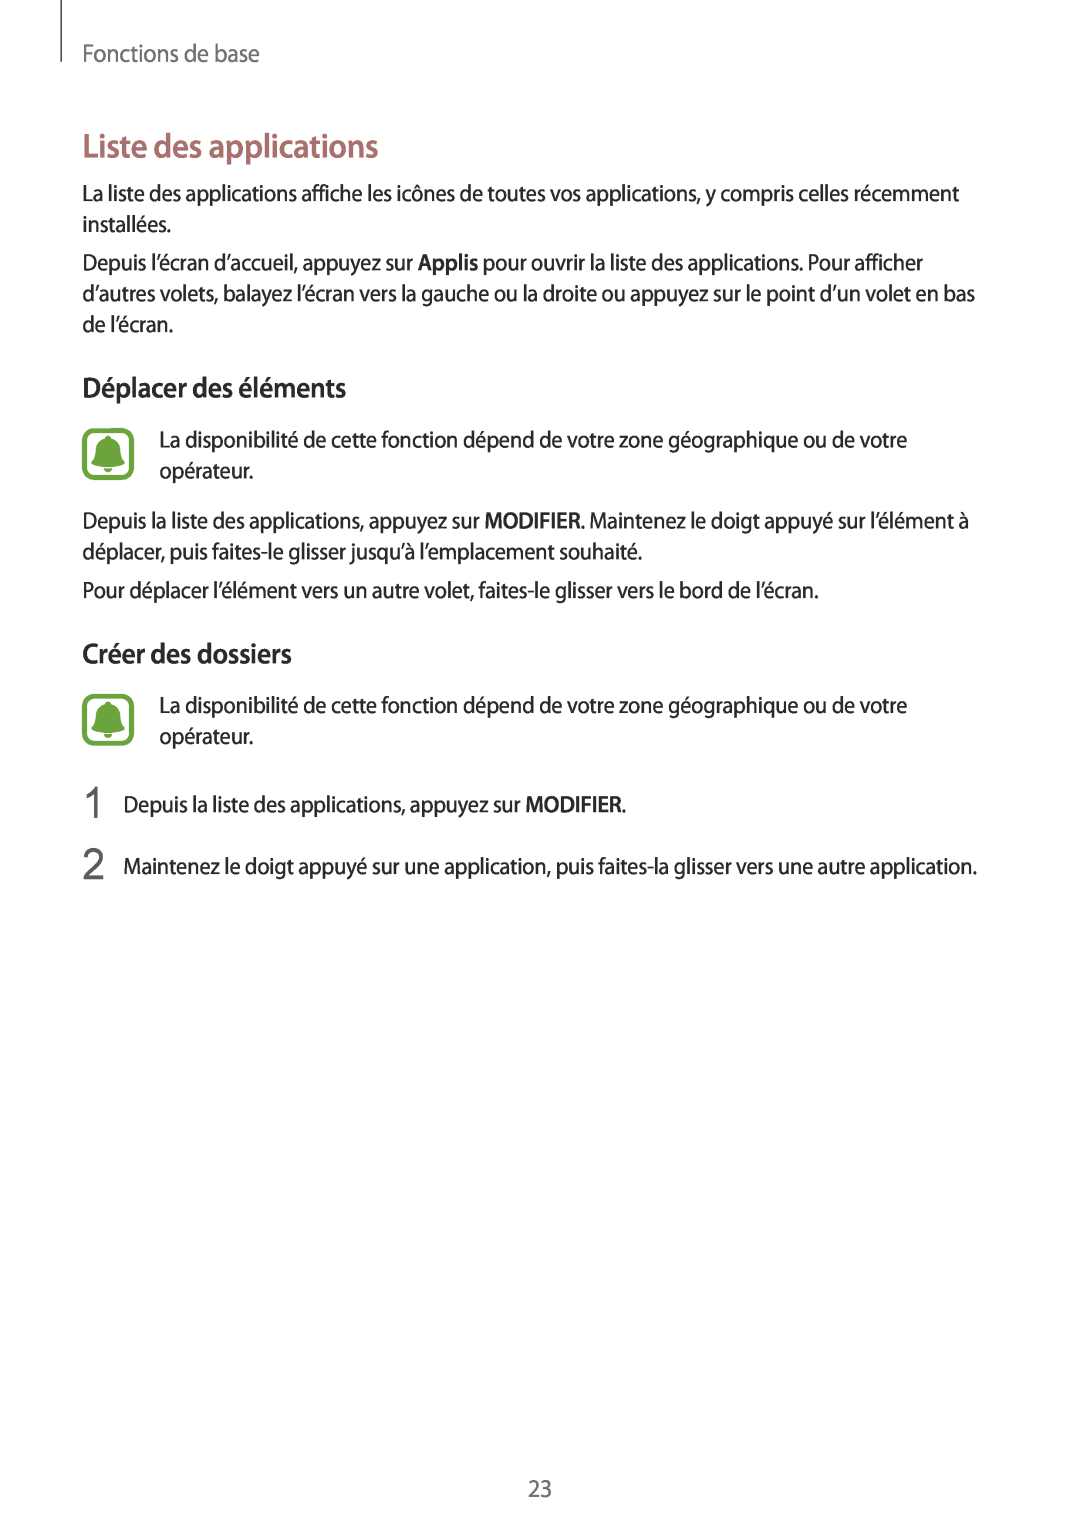 Samsung SM-G920FZDAXEF manual Liste des applications, Déplacer des éléments, Créer des dossiers, Fonctions de base 